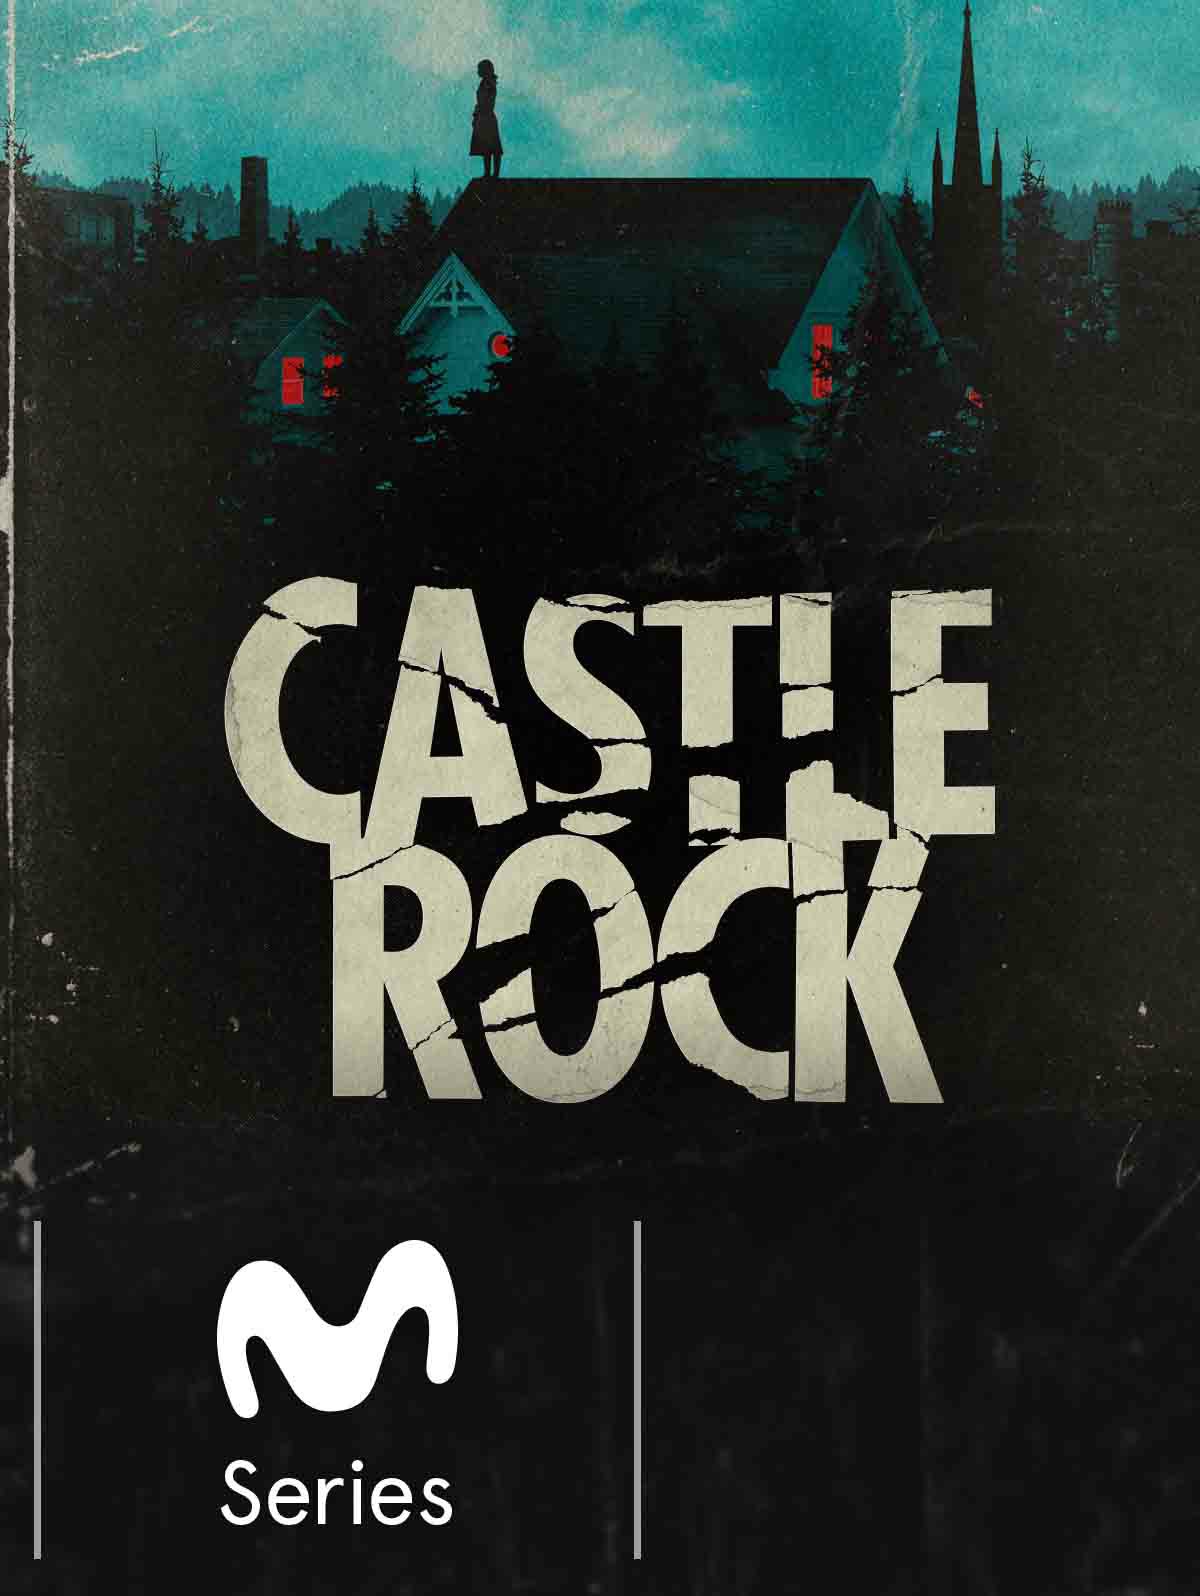 Impresiones e impresionados tras ver ‘Castle Rock’